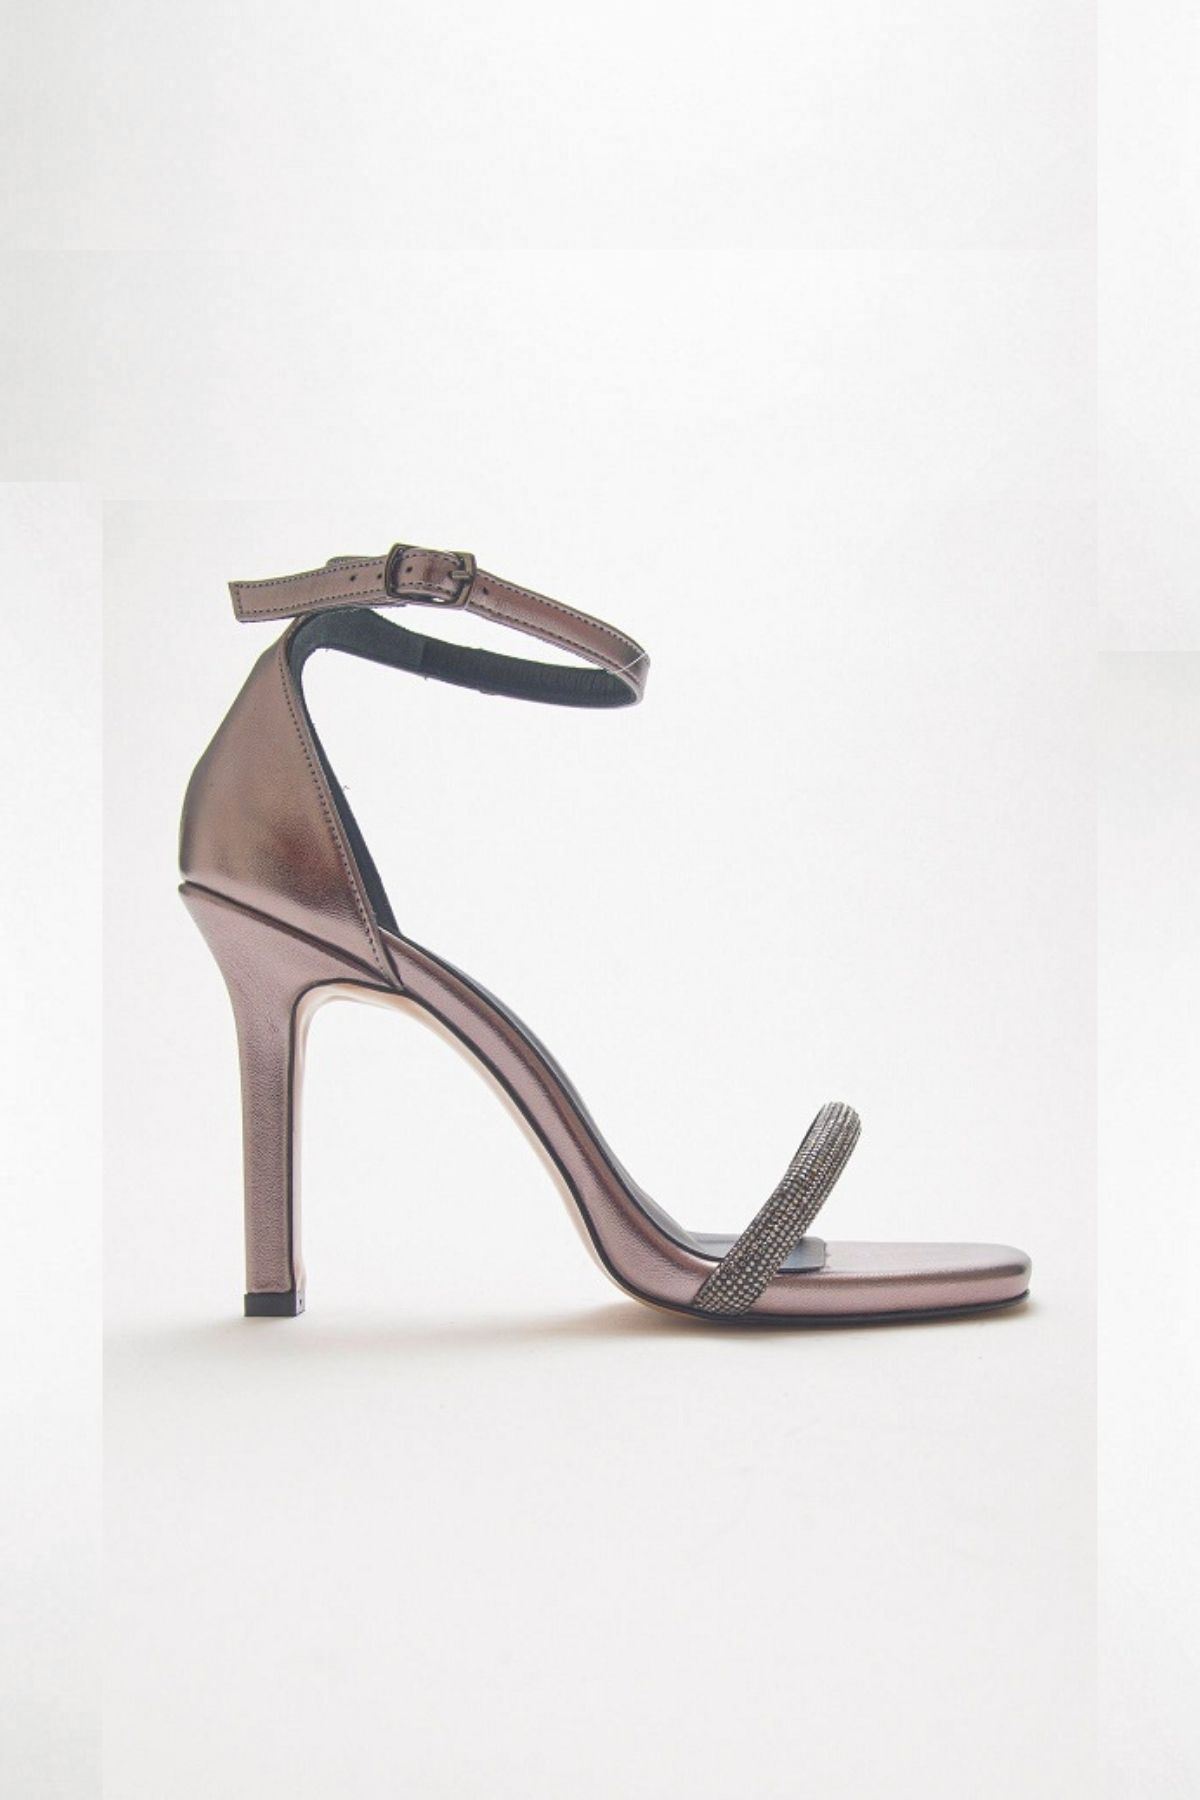 Cinzia Parlak Abiye Yüksek Topuk Taşlı Bilekten Bağlamalı Kadın Gece Ayakkabısı Gate Shoes-Platin